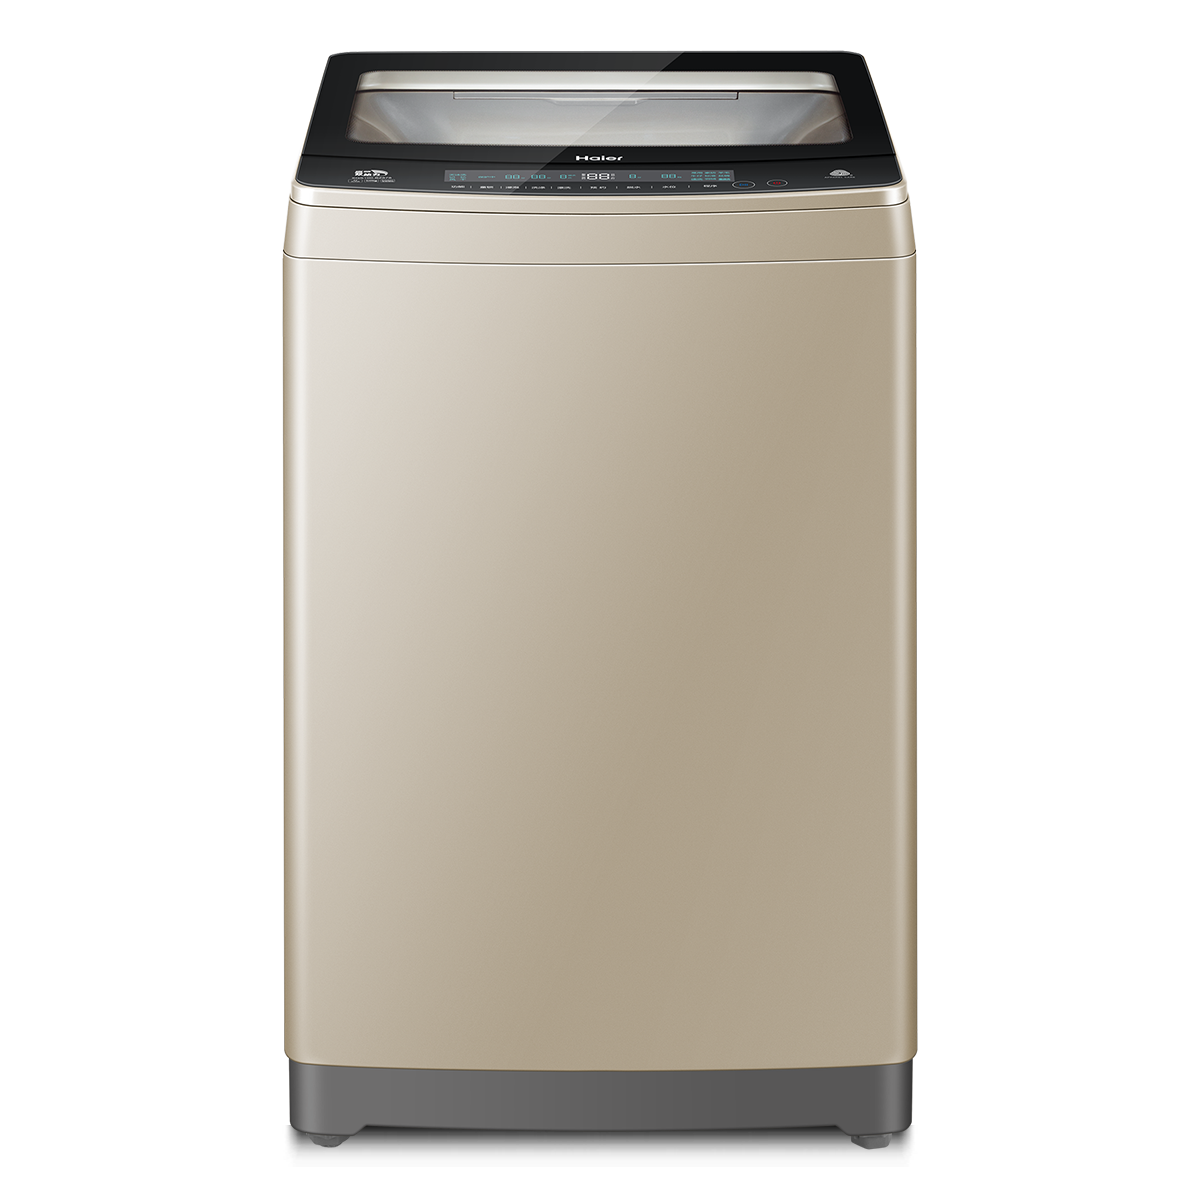 海尔Haier洗衣机 XQS100-BZ878 说明书